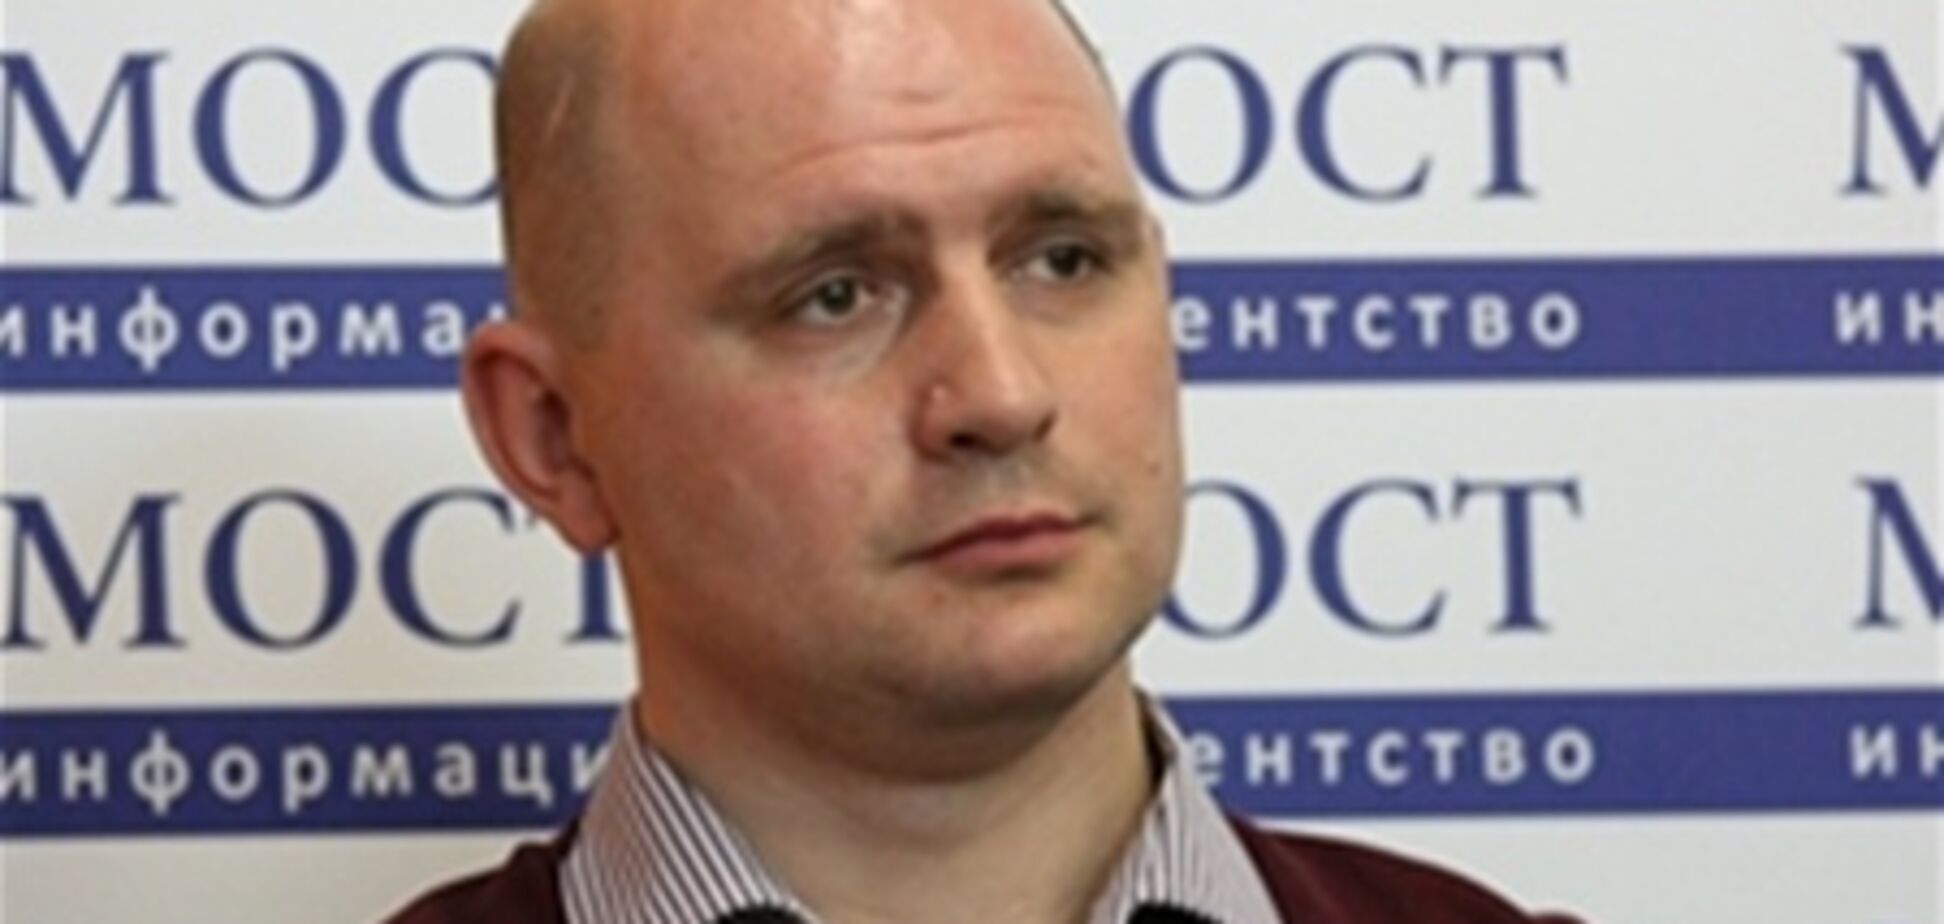 Днепропетровские террористы назвали своих жертв 'побочным эффектом'